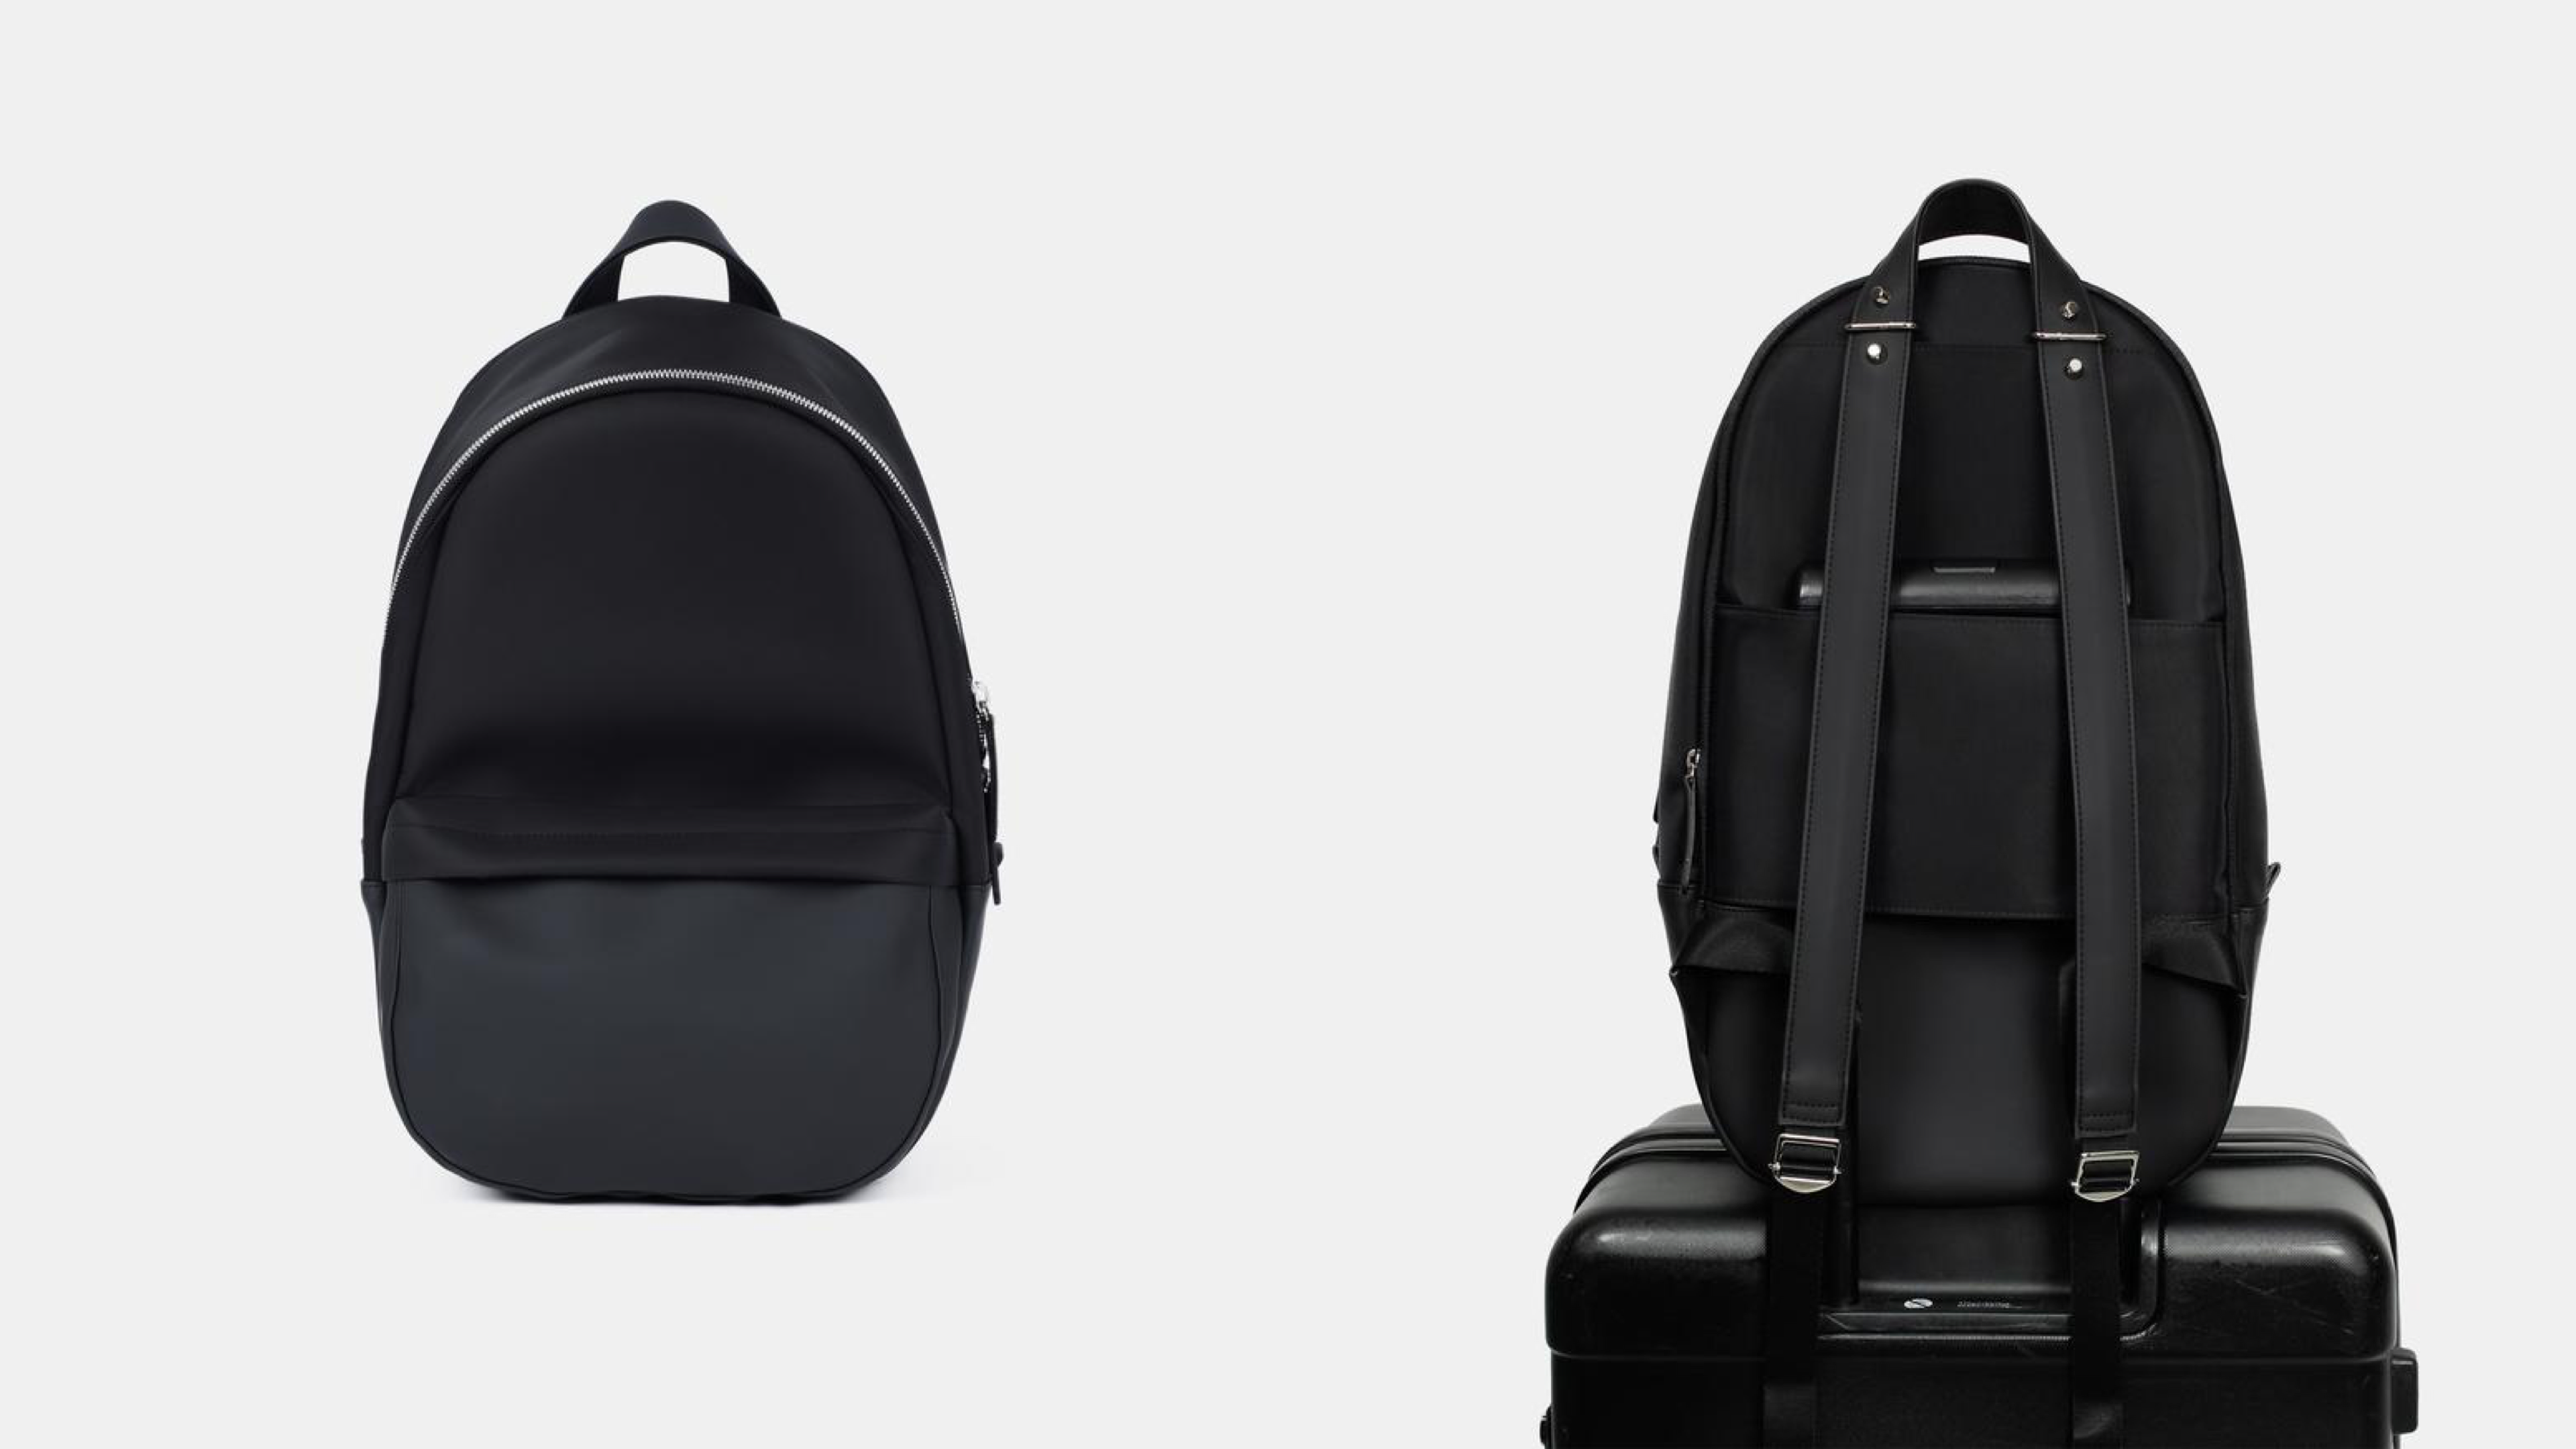 A sleek backpack